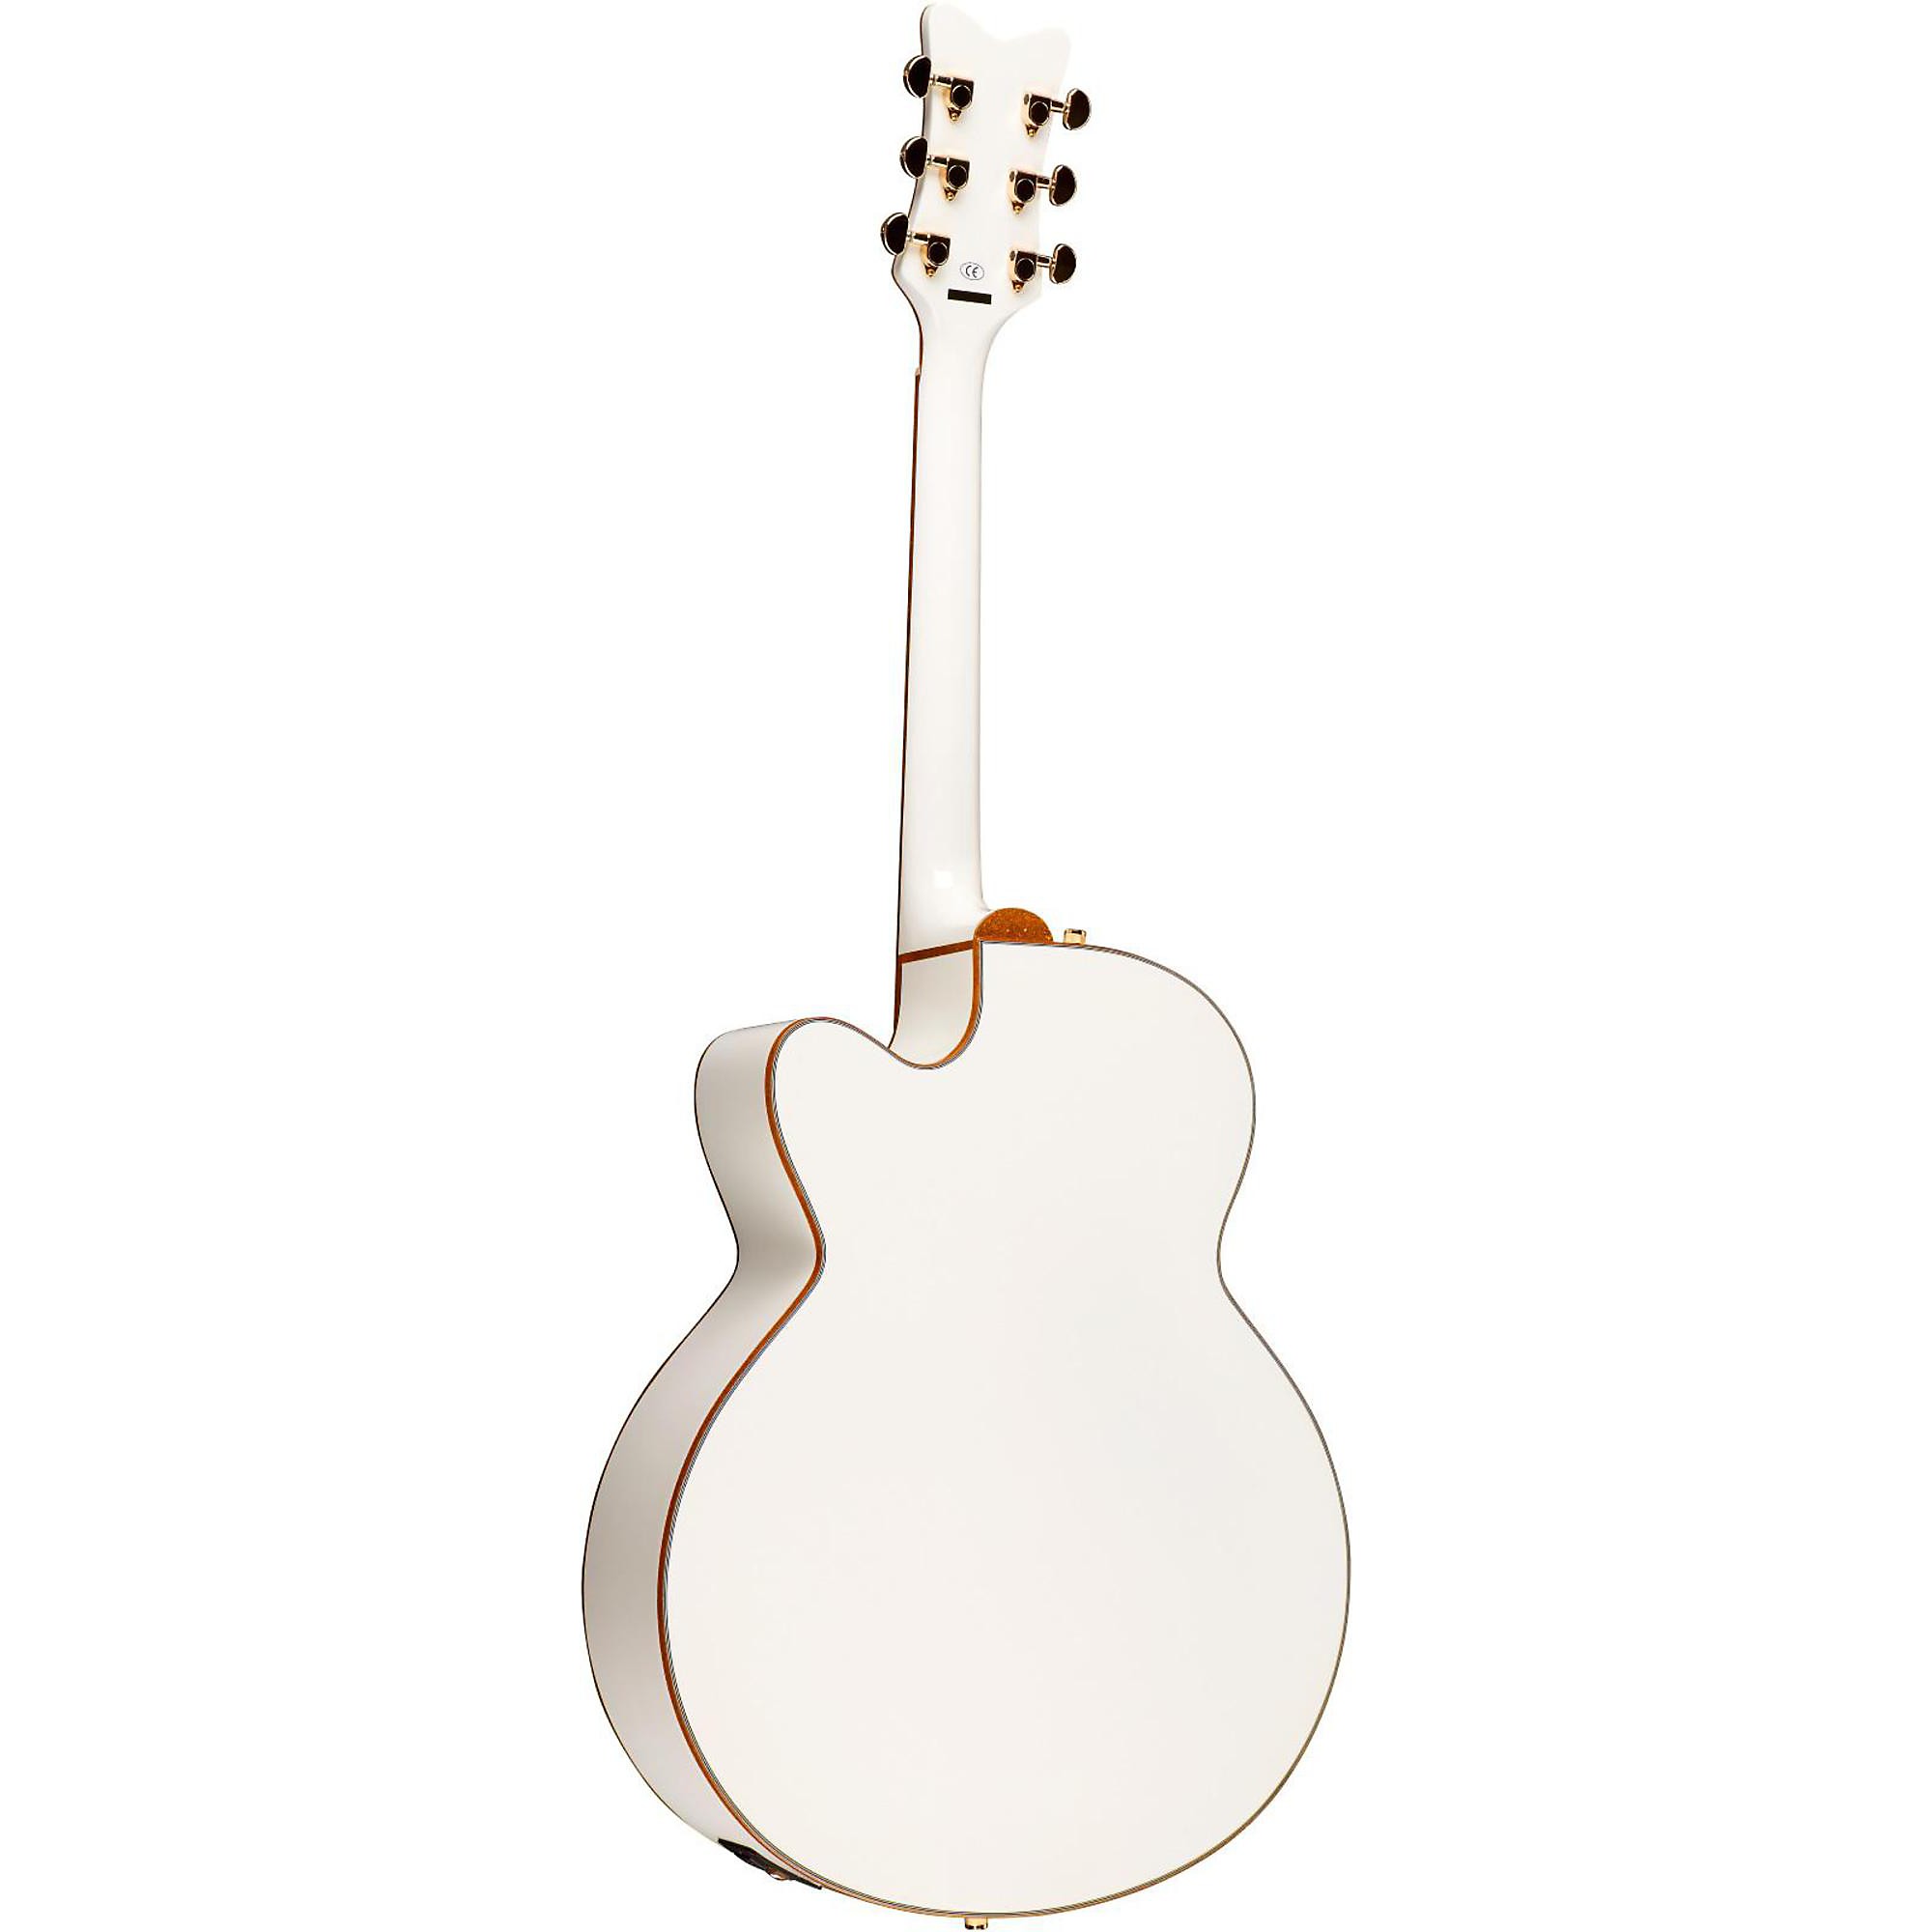 Акустически-электрическая гитара Gretsch G5022C Rancher Falcon Cutaway, белая